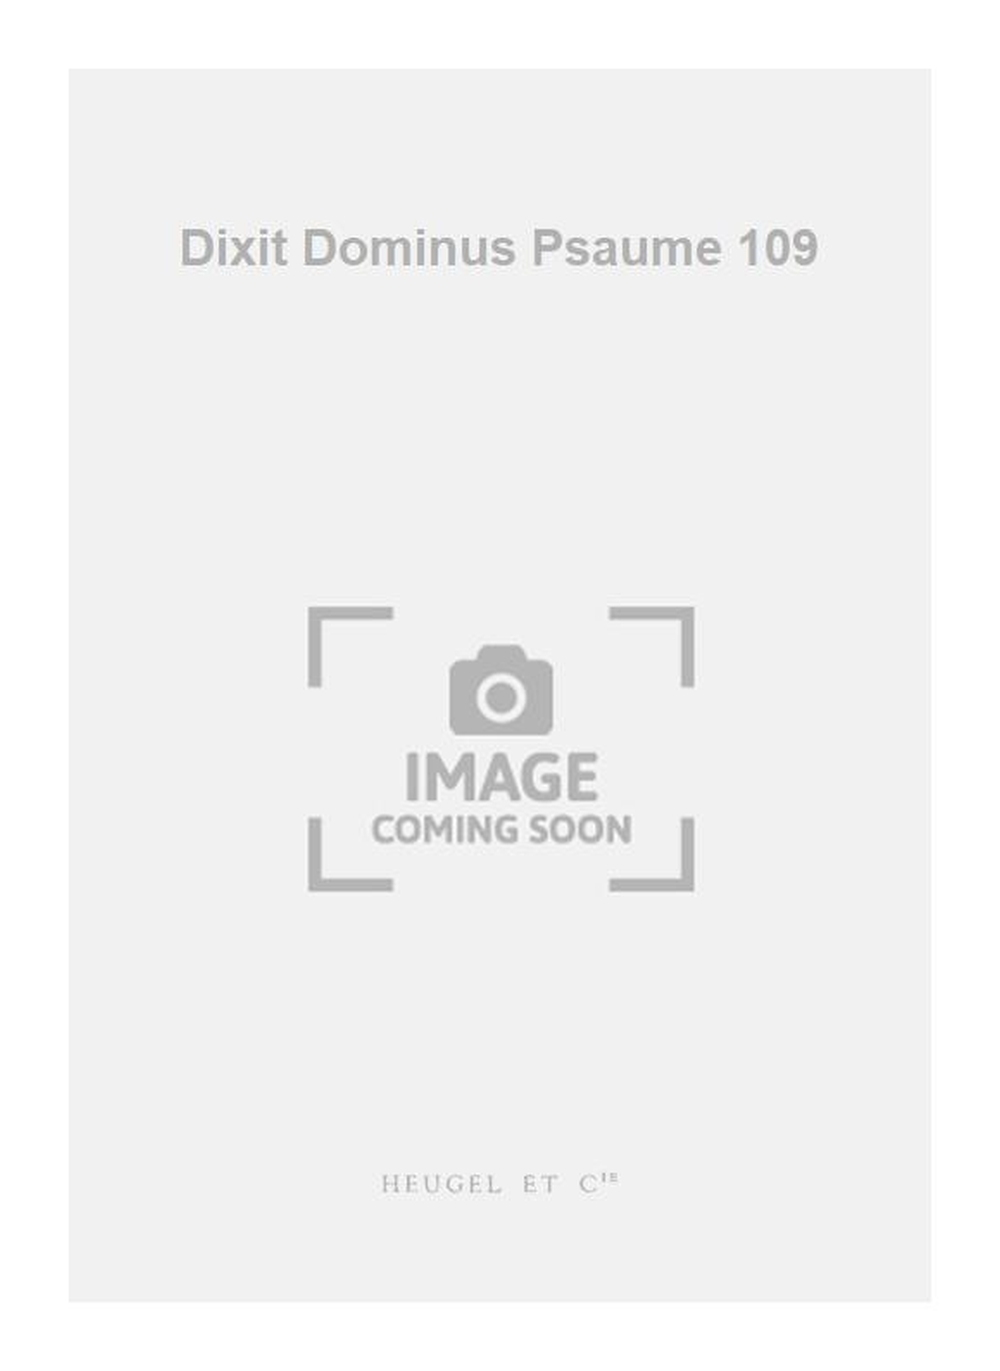 Michel-Richard Delalande: Dixit Dominus Psaume 109